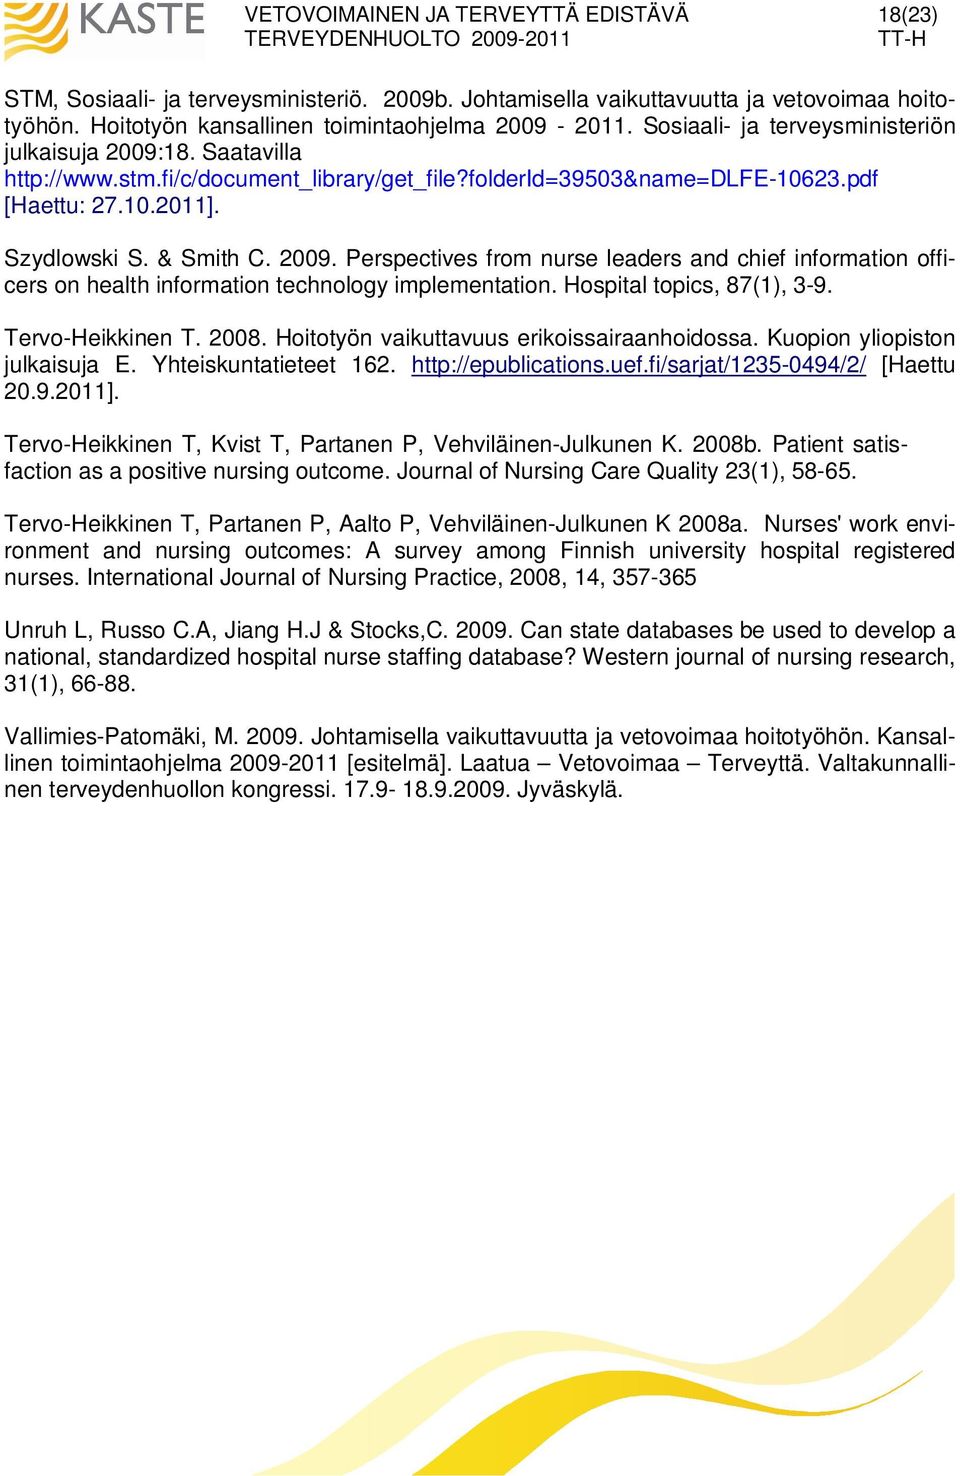 Hospital topics, 87(1), 3-9. Tervo-Heikkinen T. 2008. Hoitotyön vaikuttavuus erikoissairaanhoidossa. Kuopion yliopiston julkaisuja E. Yhteiskuntatieteet 162. http://epublications.uef.